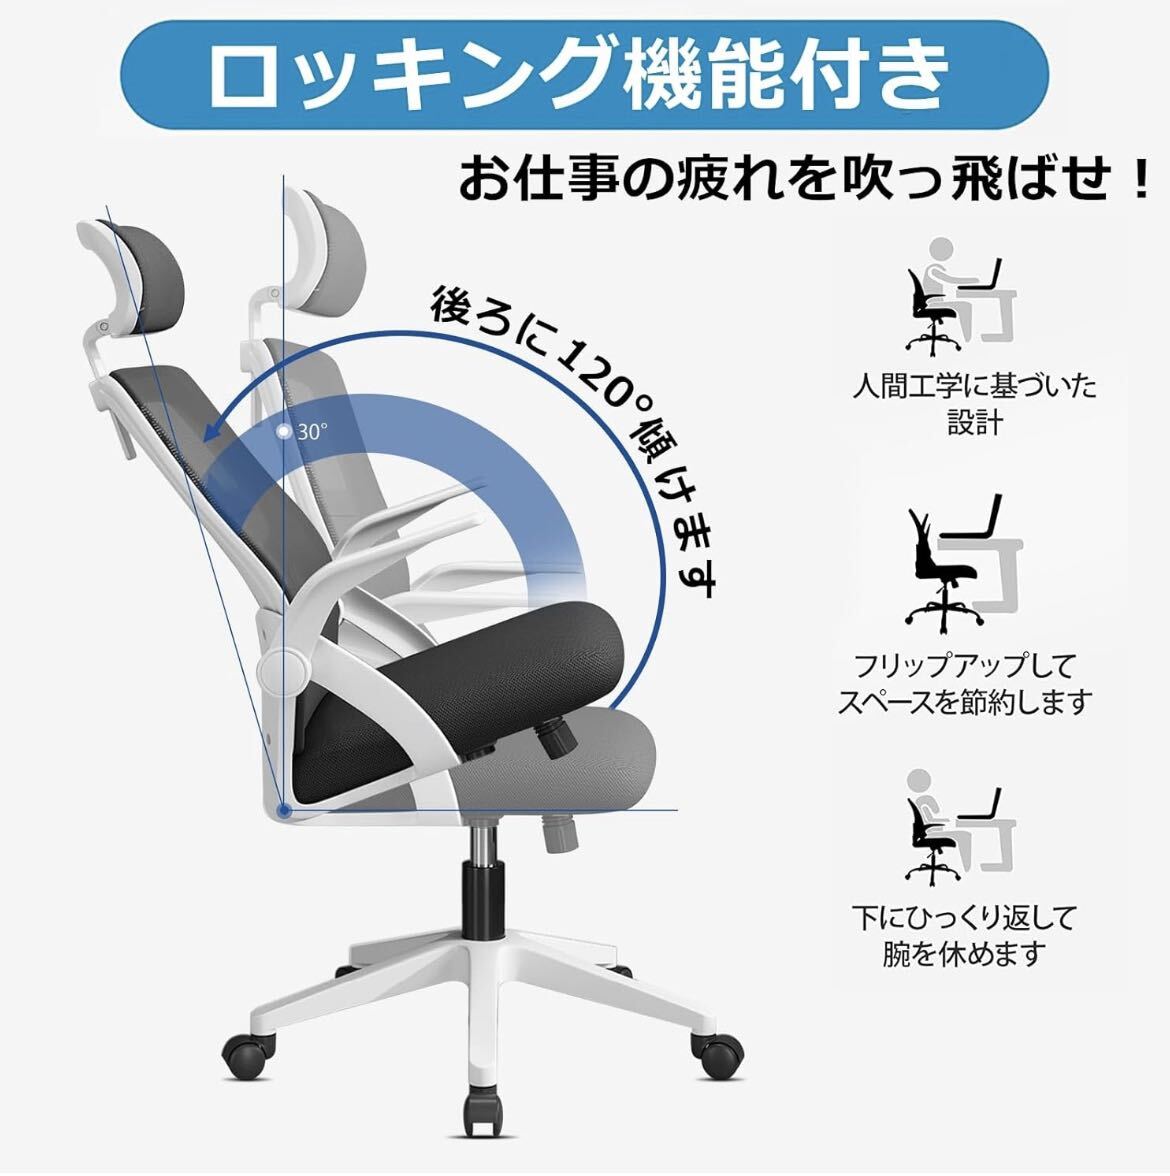 オフィスチェア 椅子 テレワーク 疲れない デスクチェア パソコンチェア ワークチェア おしゃれ 通気性 跳ね上げ式アームレスト ロッキングの画像3